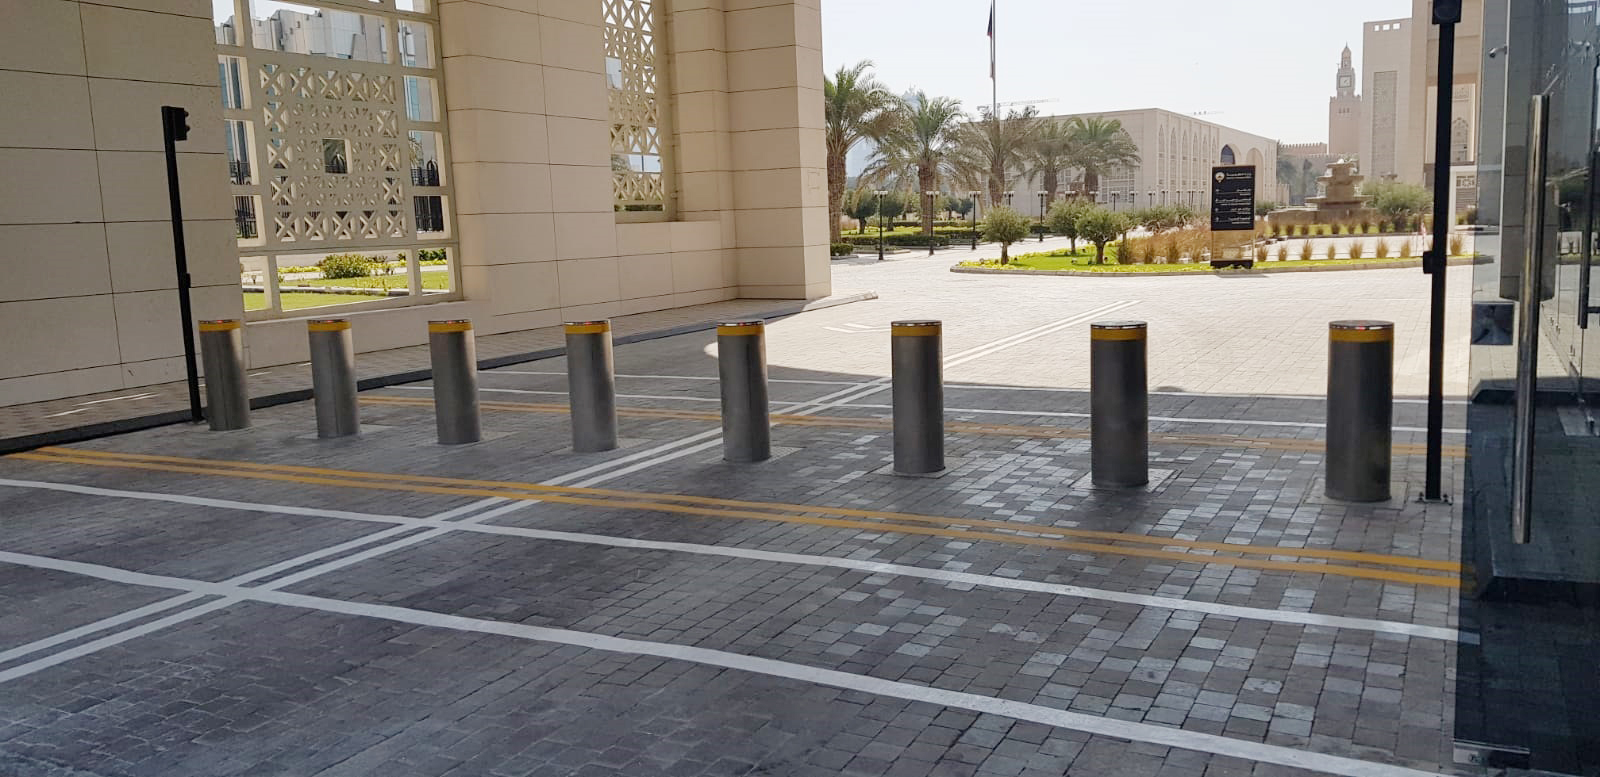 Verkehrsautomatische Poller, Außenministerium, Kuwait